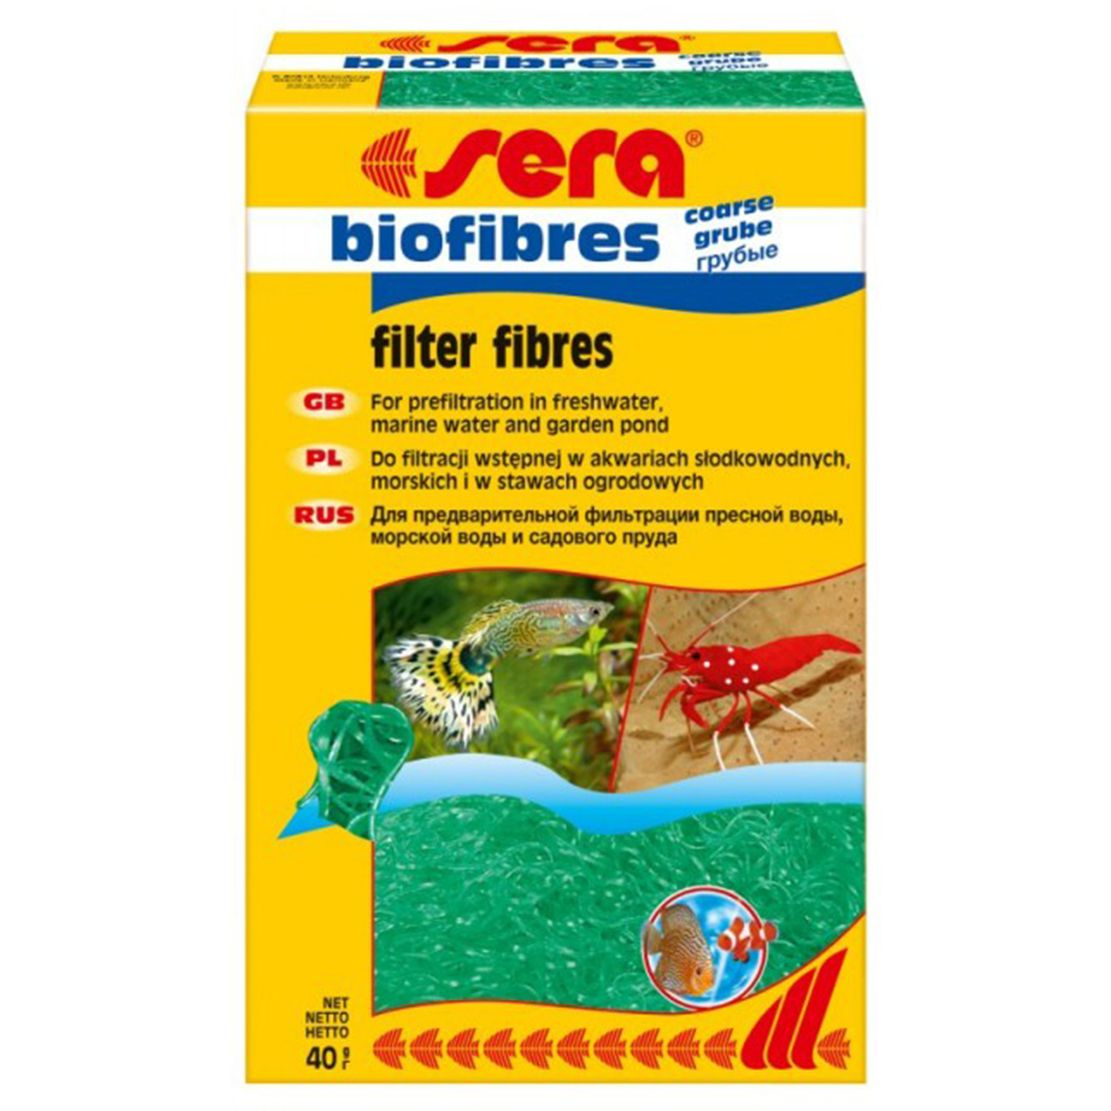 Sera filtru cu biofibre aspre 40g